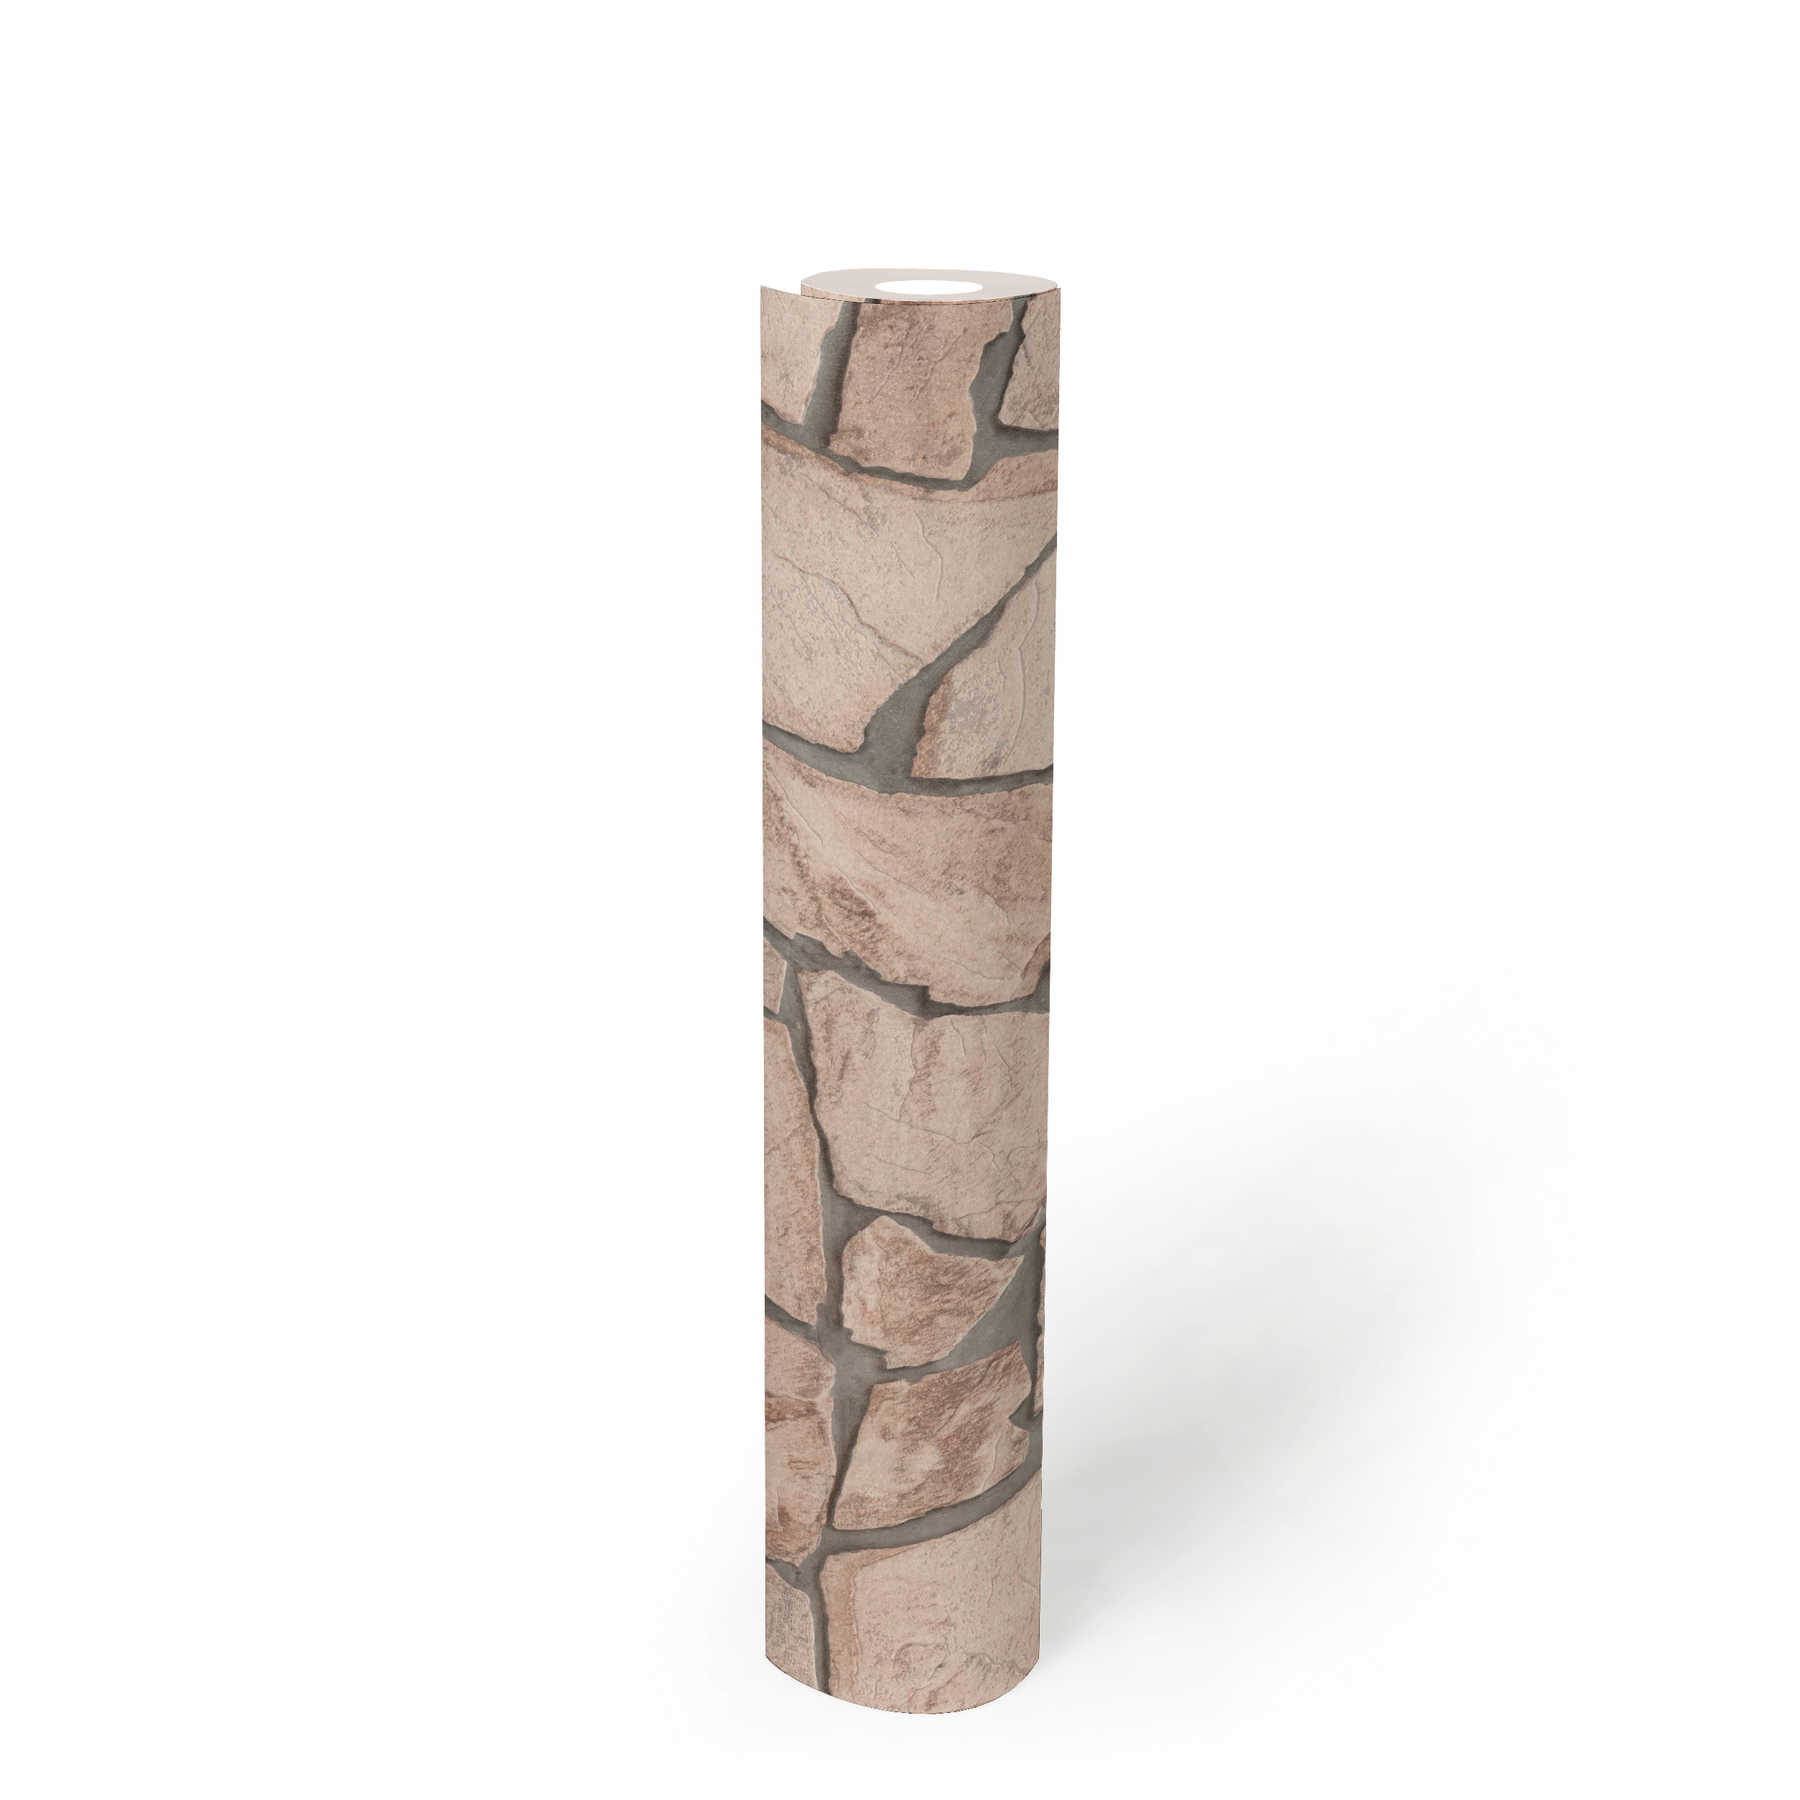             Papier peint pierre effet 3D, motif réaliste de pierre naturelle - beige, gris, marron
        